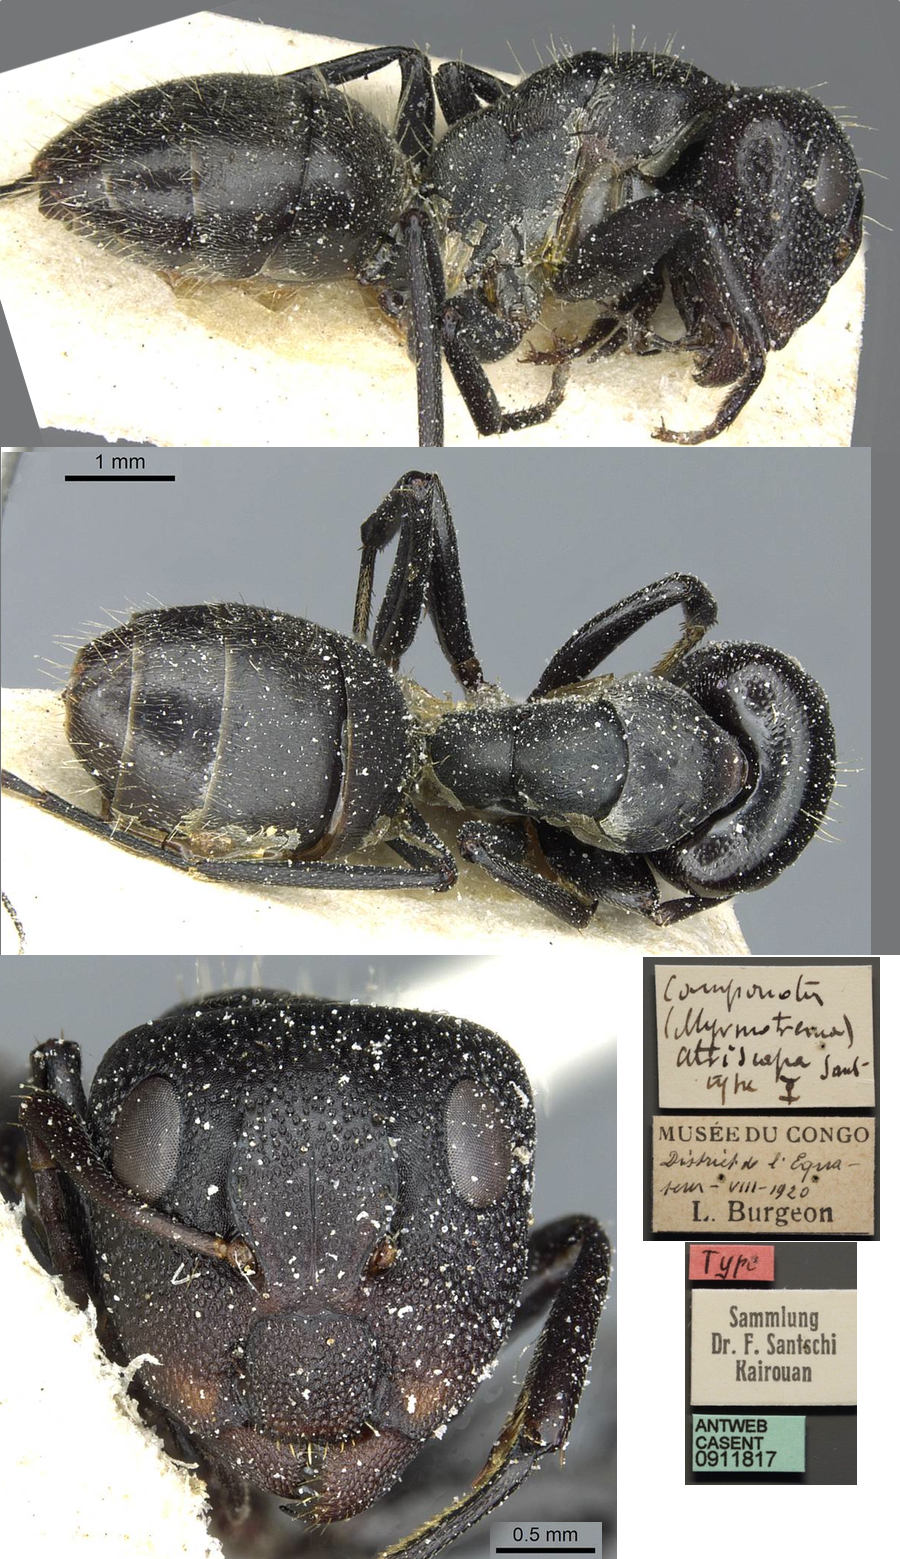 {Camponotus atriscapus major}